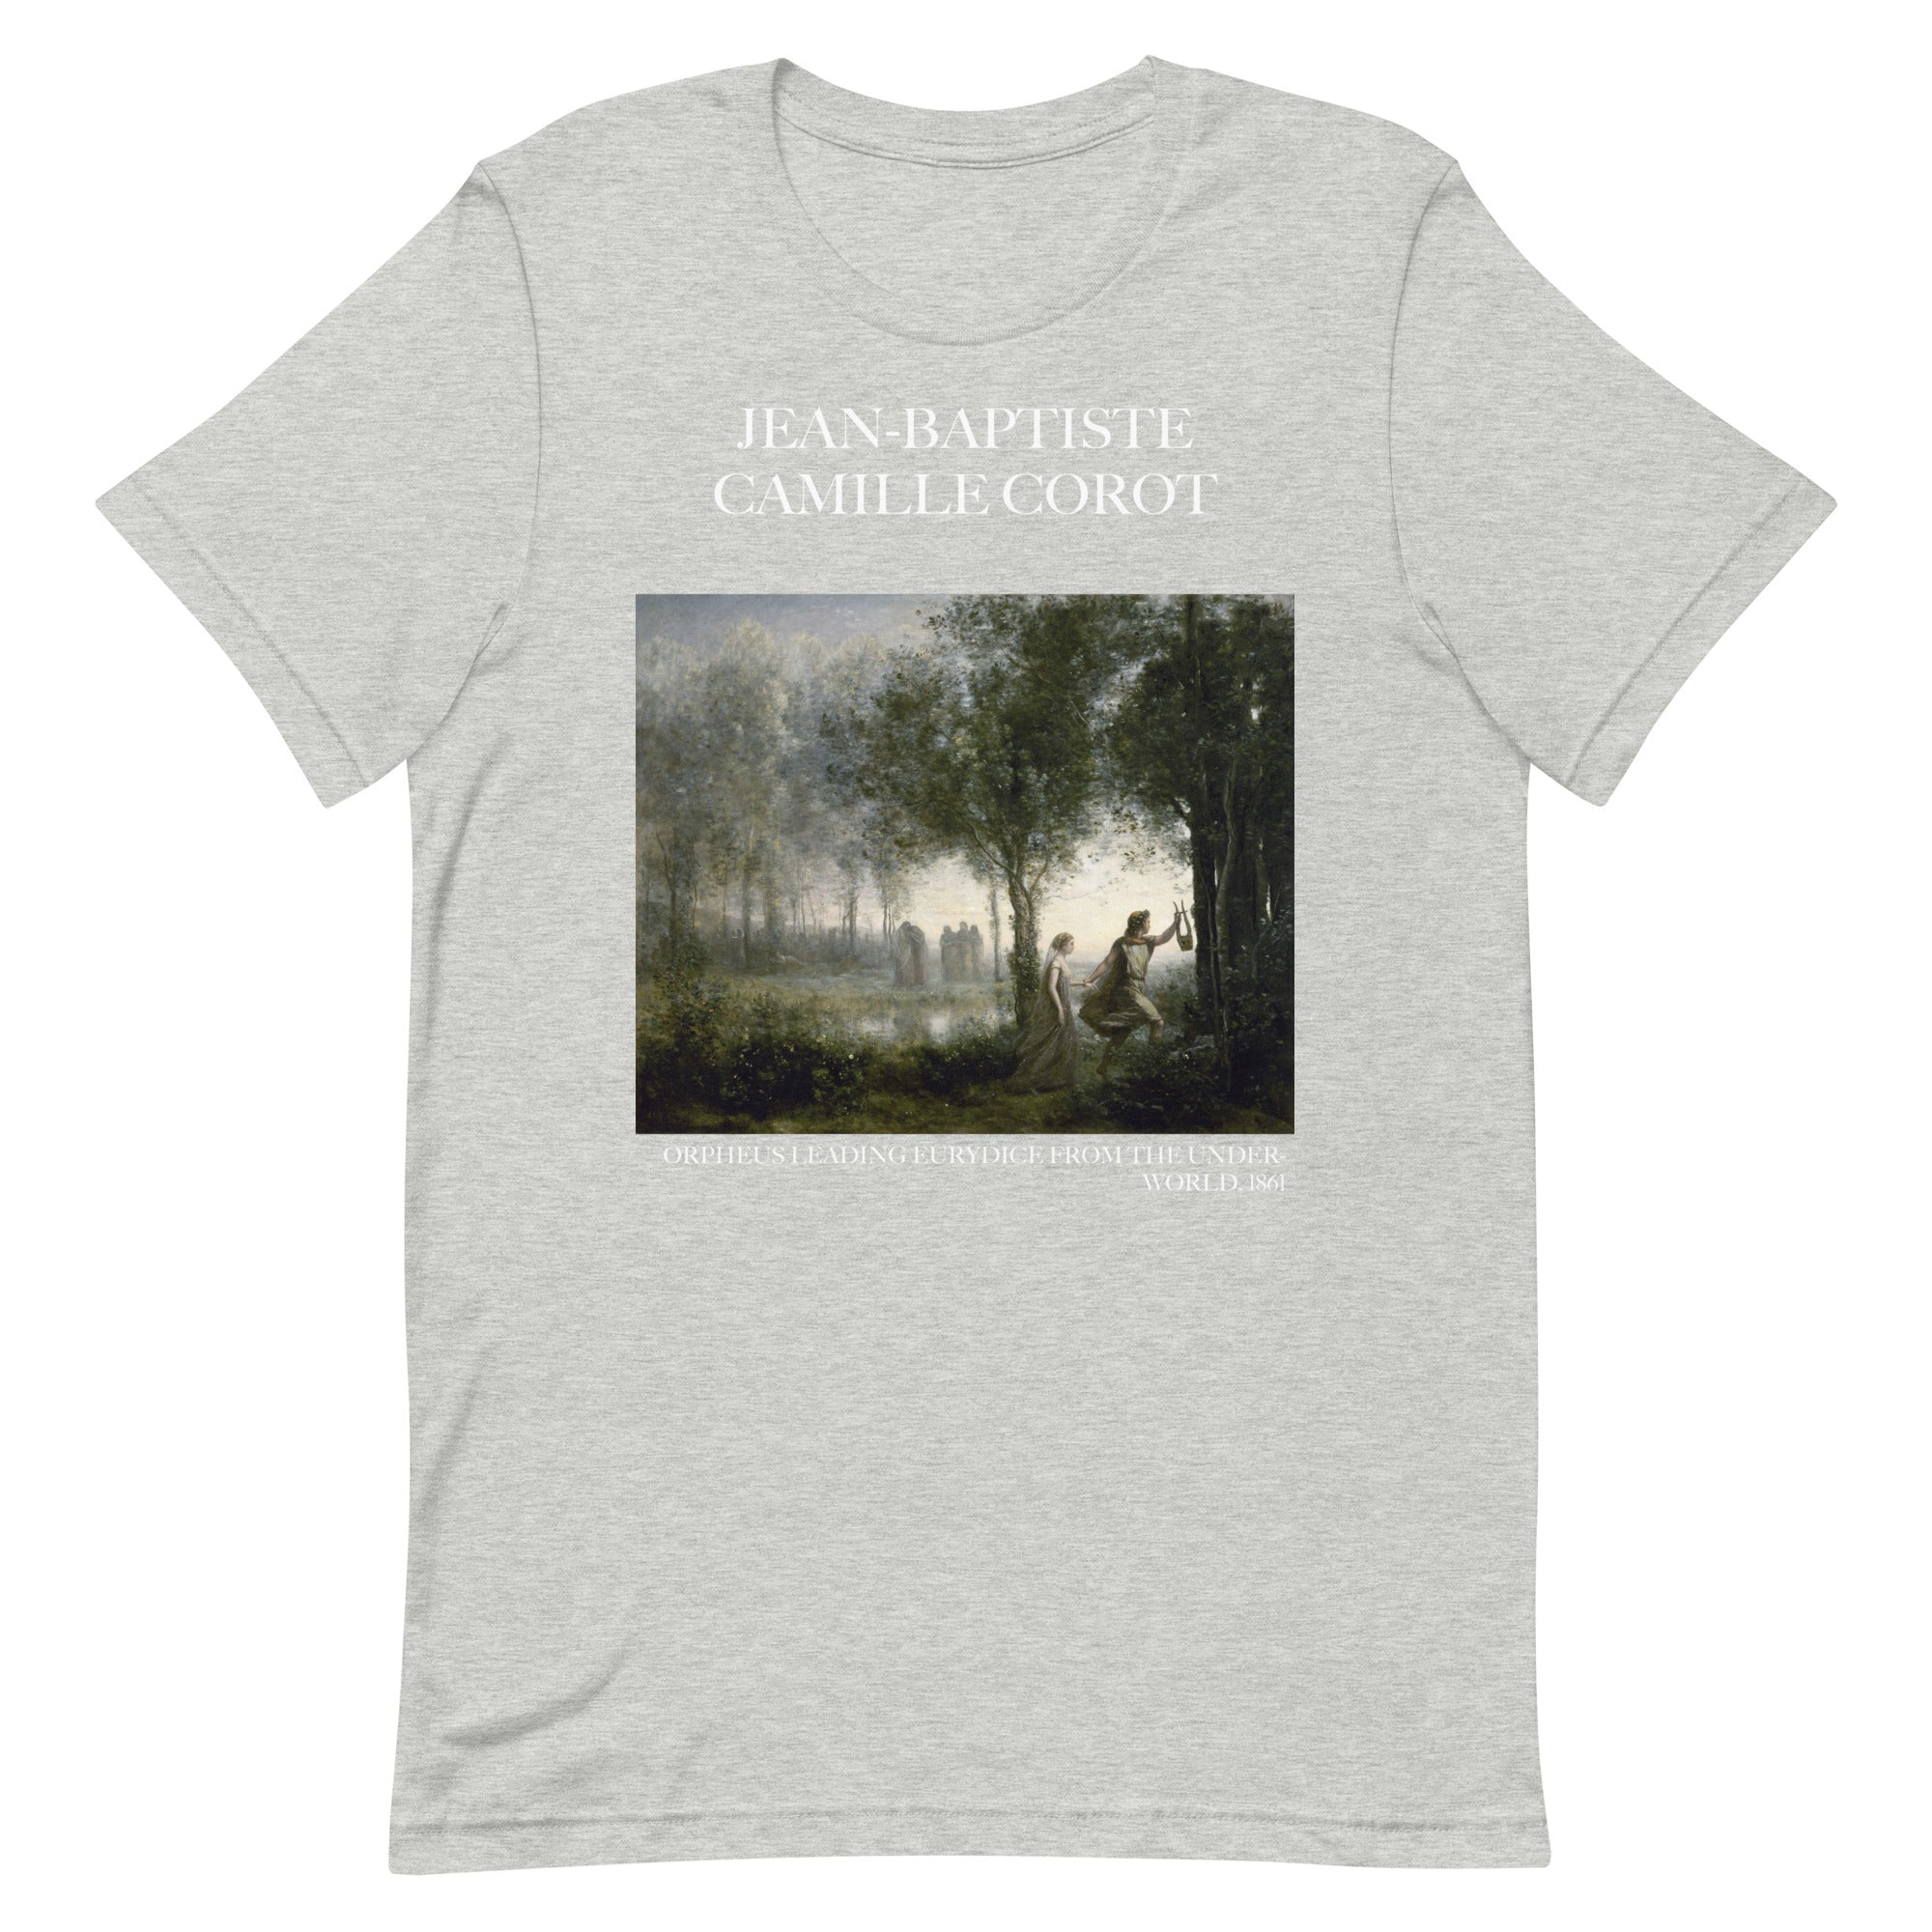 Jean-Baptiste Camille Corot T-Shirt mit berühmtem Gemälde „Orpheus führt Eurydike aus der Unterwelt“ | Unisex-T-Shirt im klassischen Kunststil